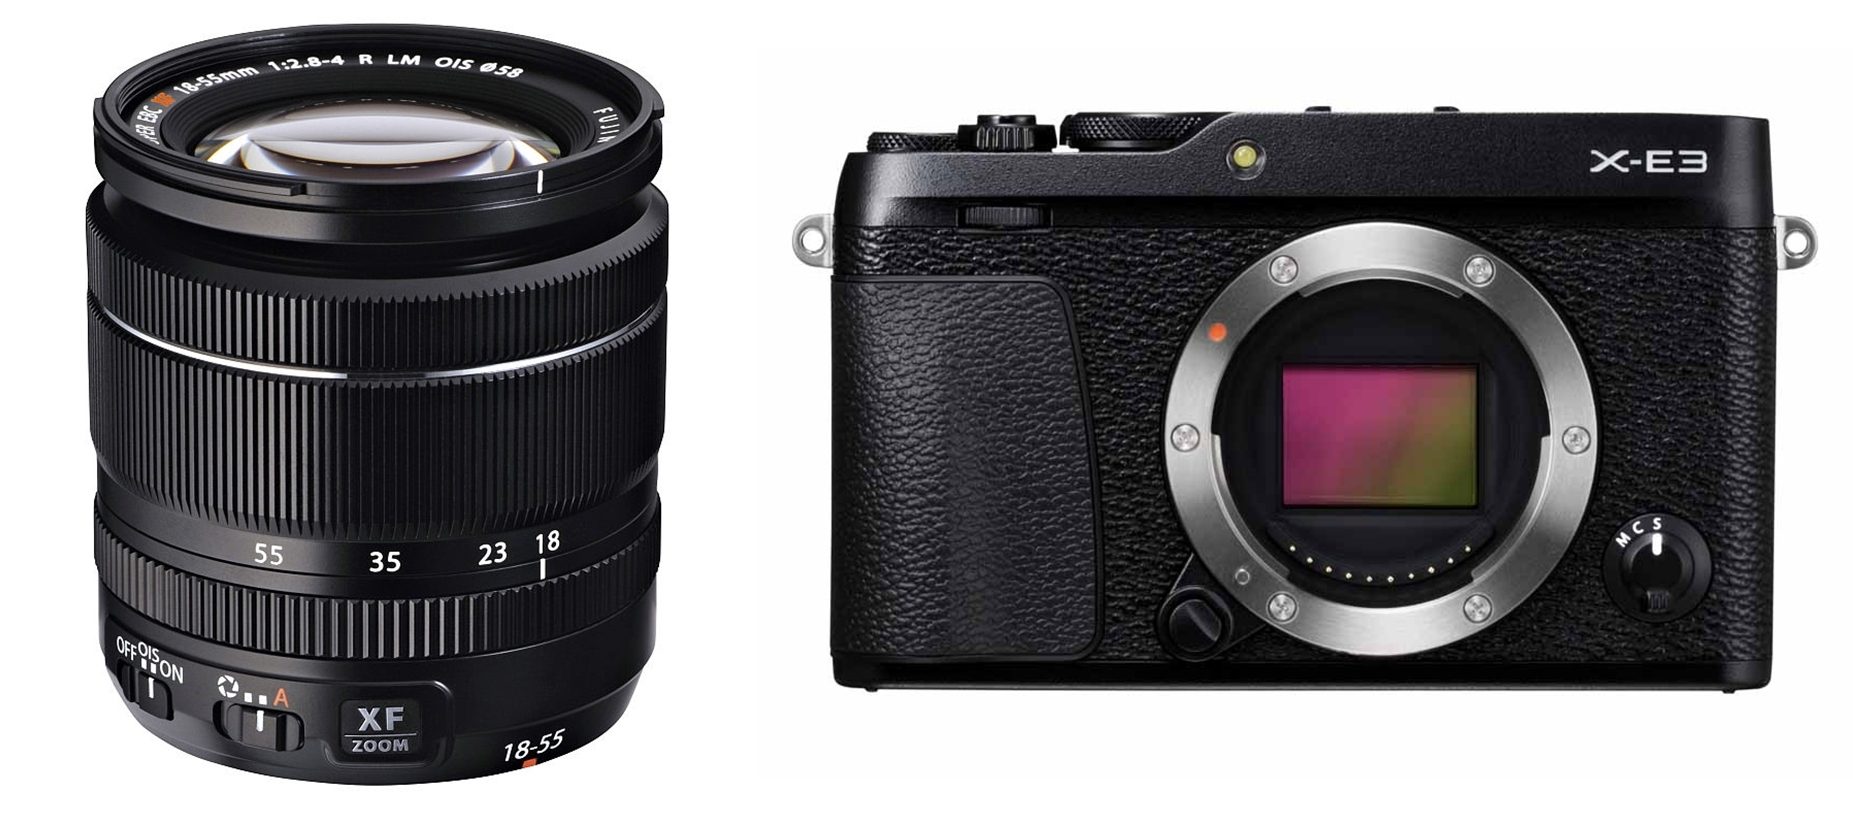 xe3 & xf18-55 lens kit